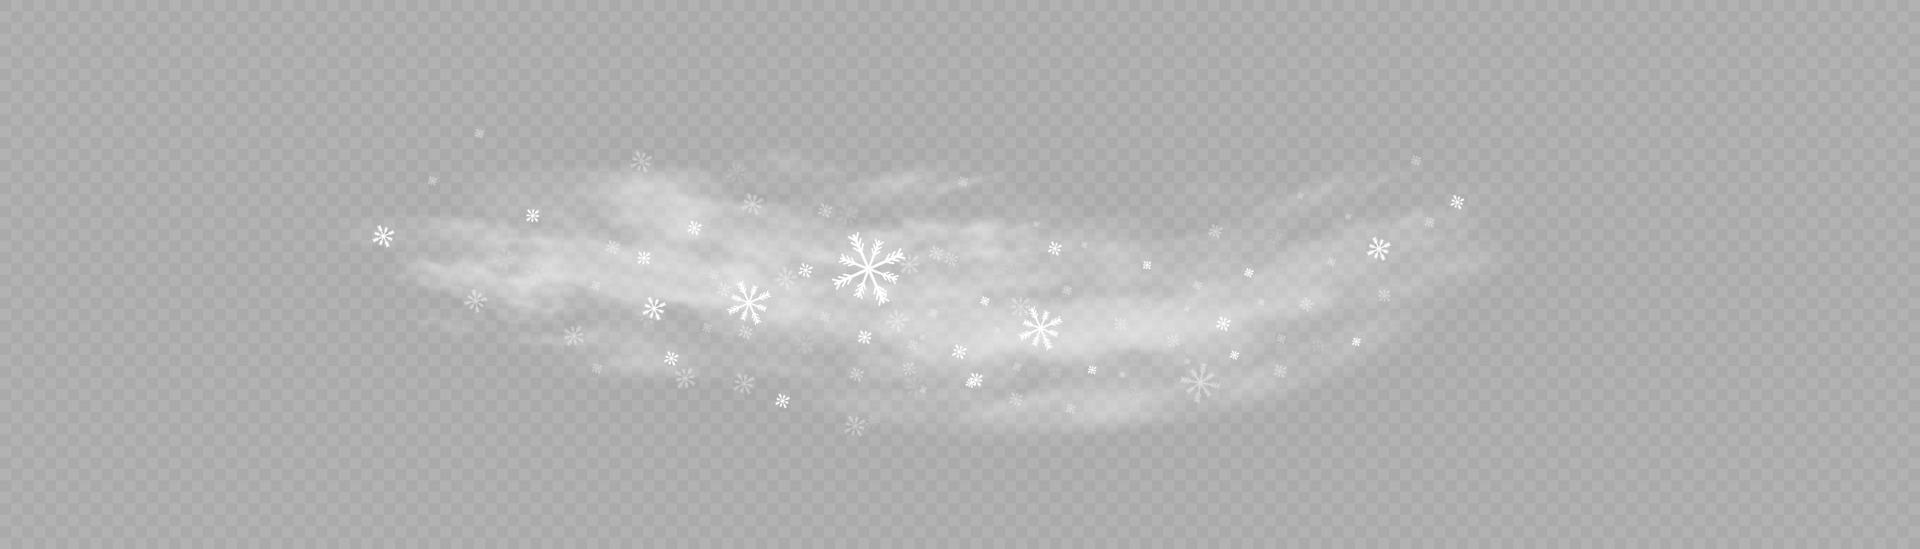 neige et vent. élément décoratif dégradé blanc. illustration vectorielle. hiver et neige avec brouillard. vent et brouillard. vecteur